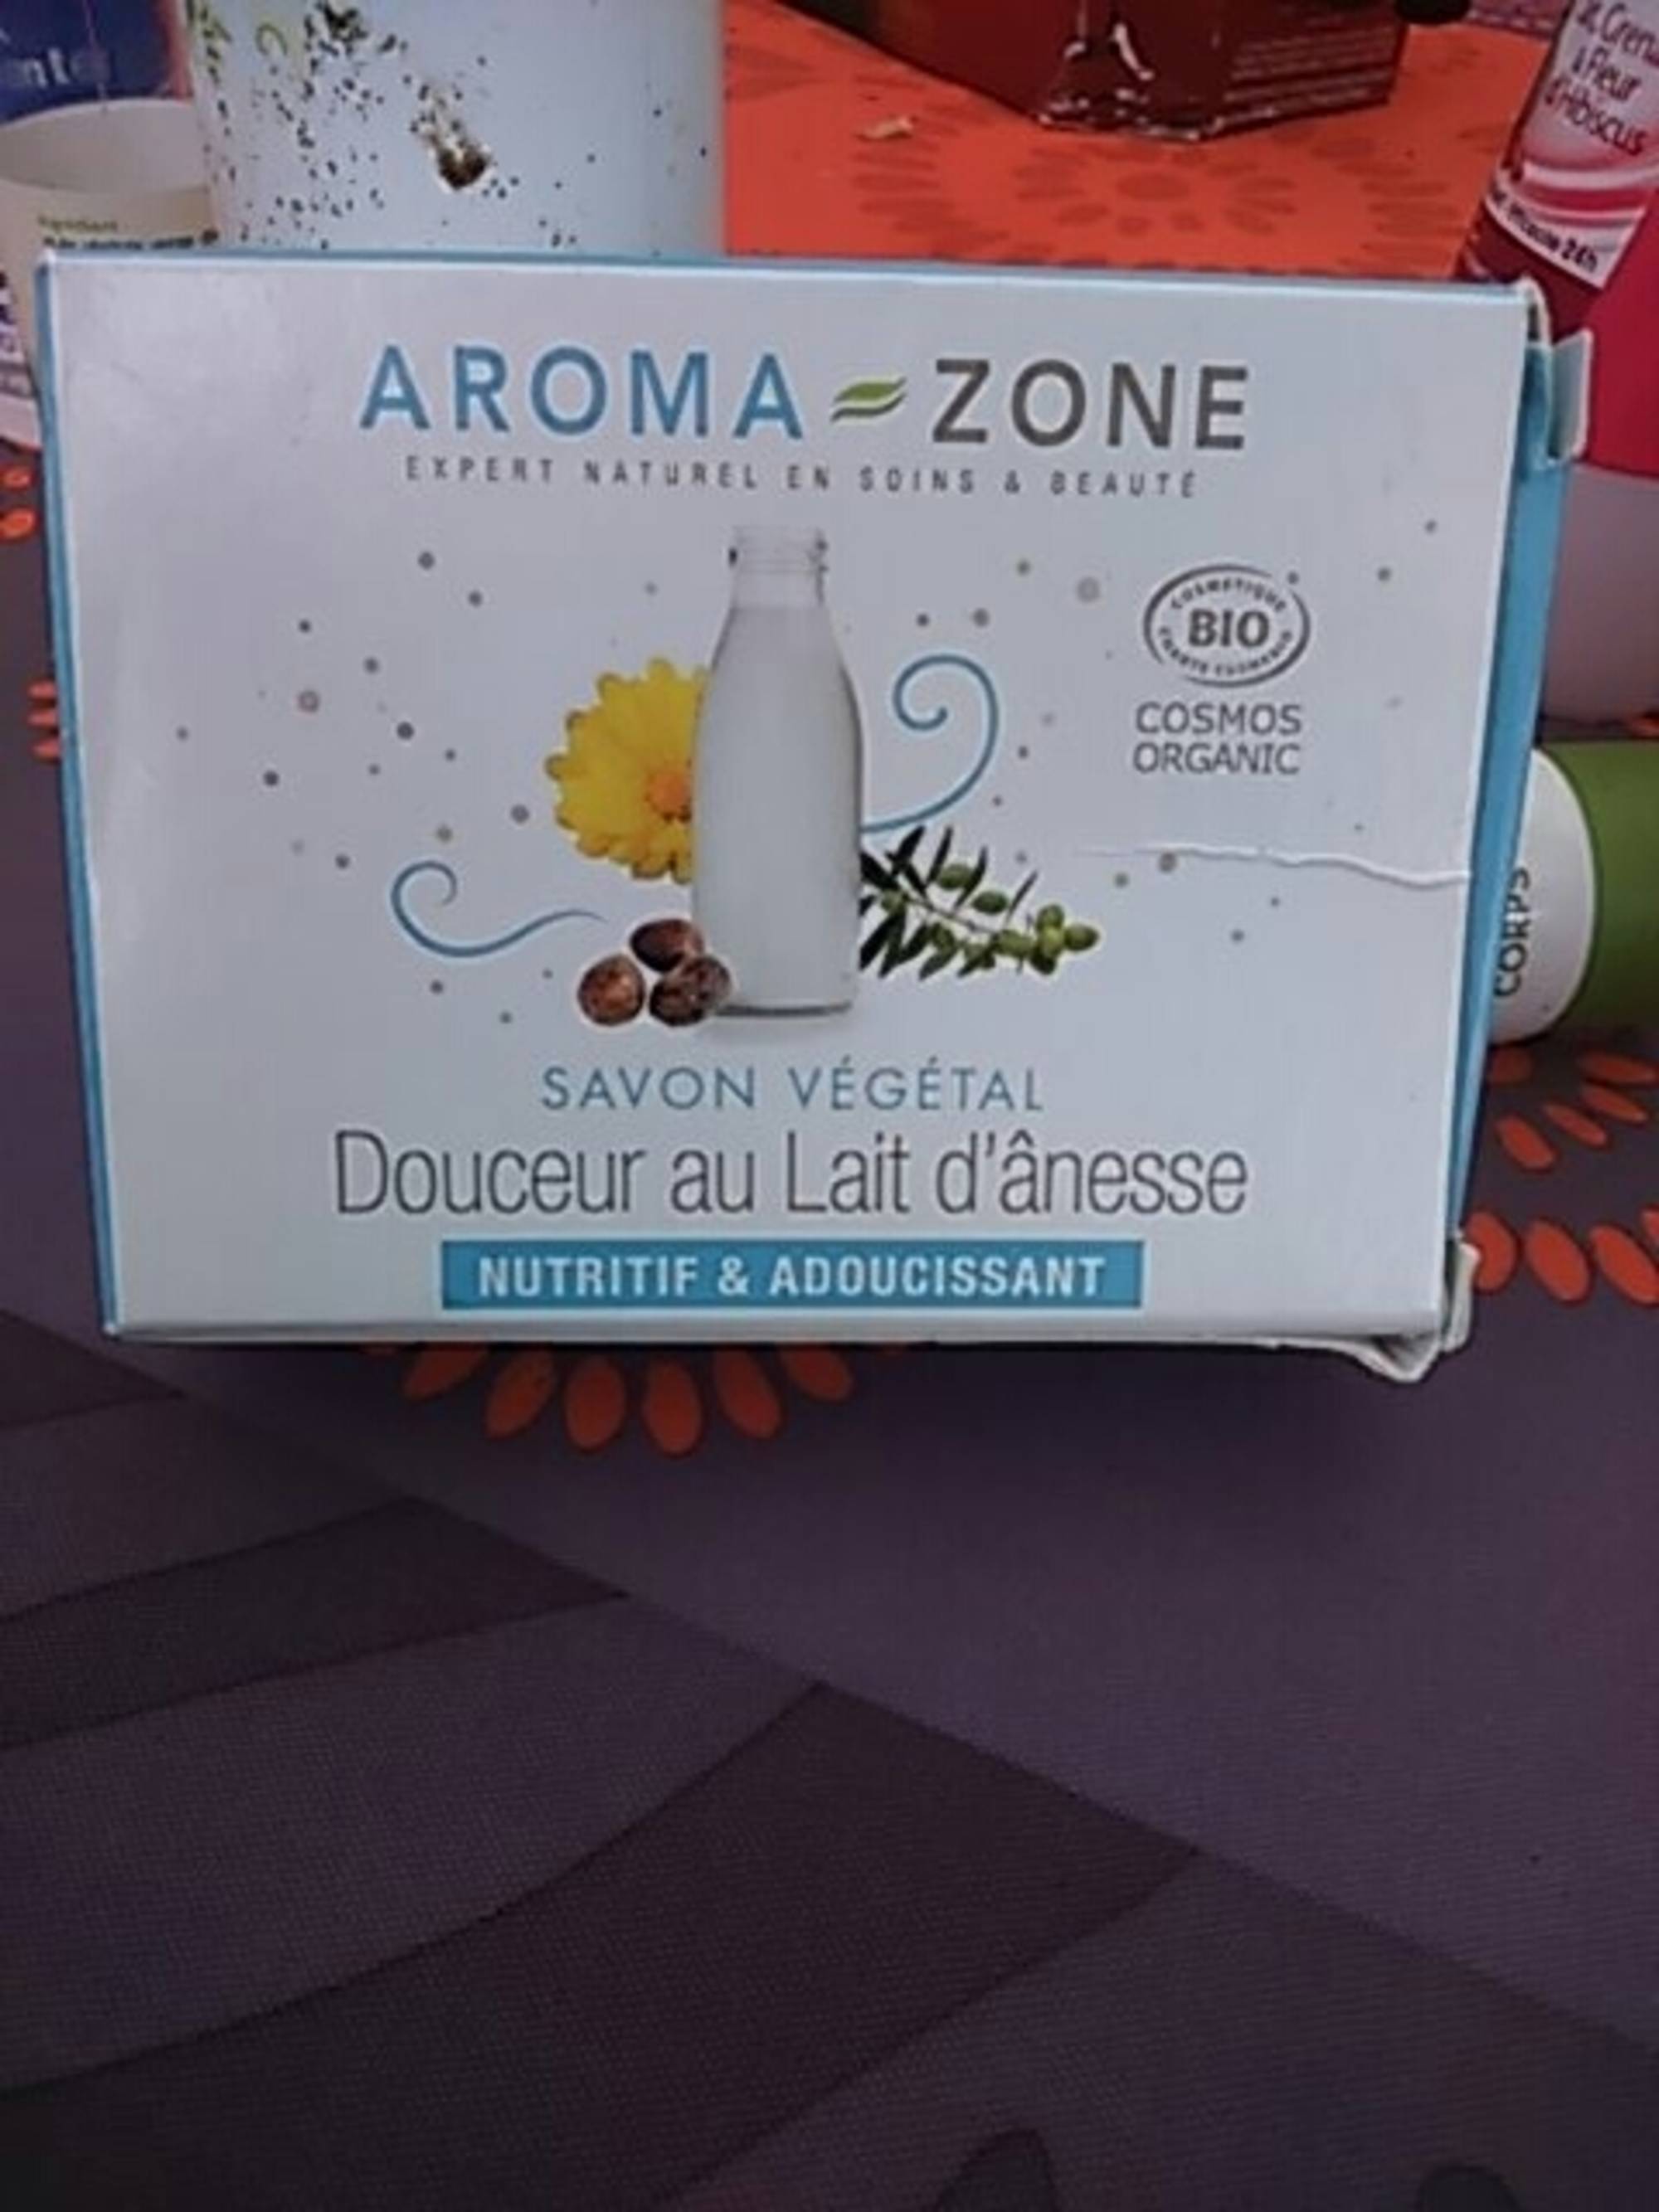 AROMA-ZONE - Savon végétal - Douceur au lait d'ânesse